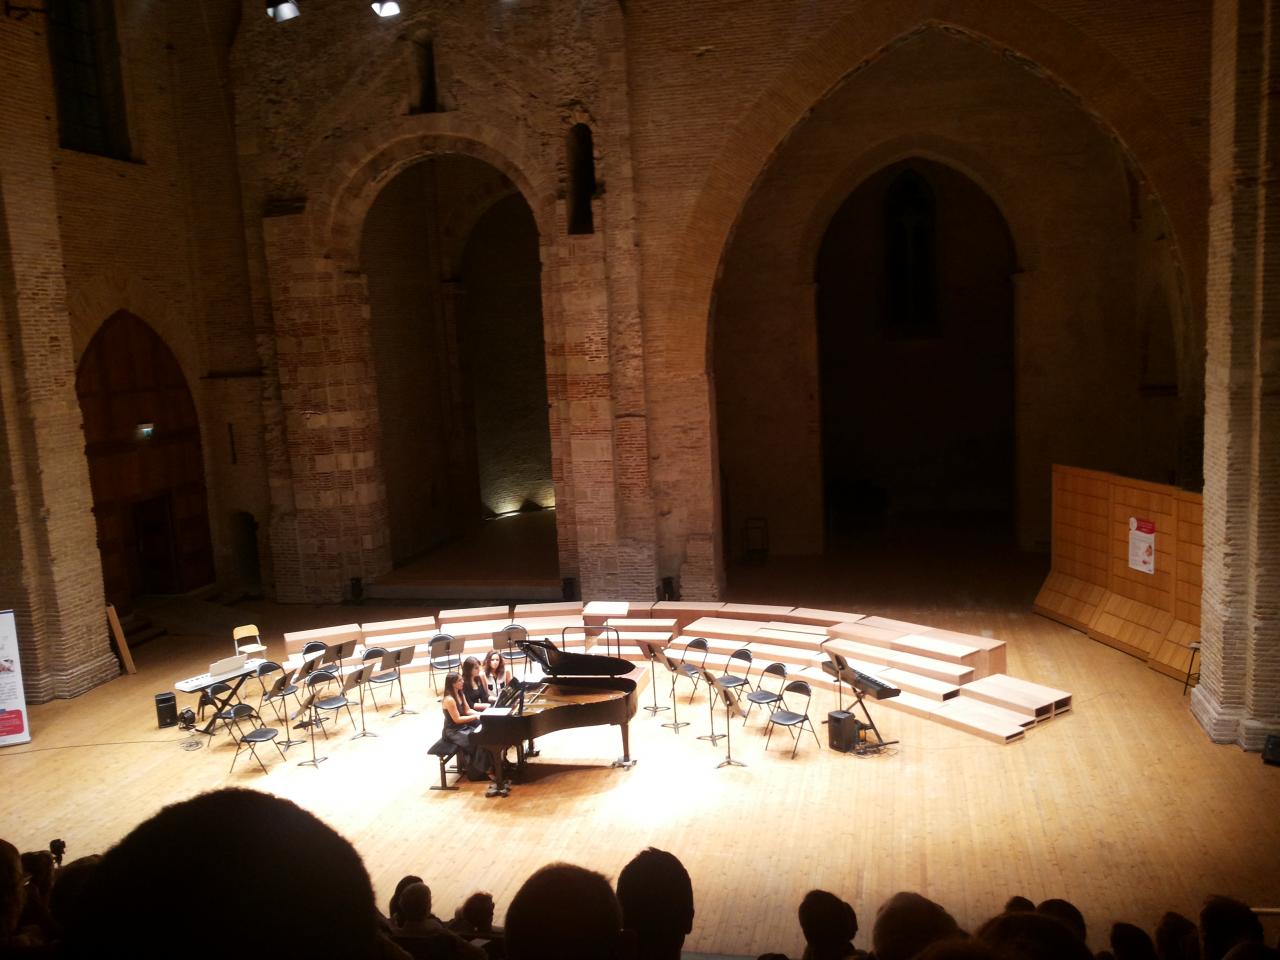 Concert de piano à 4 mains, Auditorium Saint-Pierre-des-Cuisines, Toulouse, octobre 2016